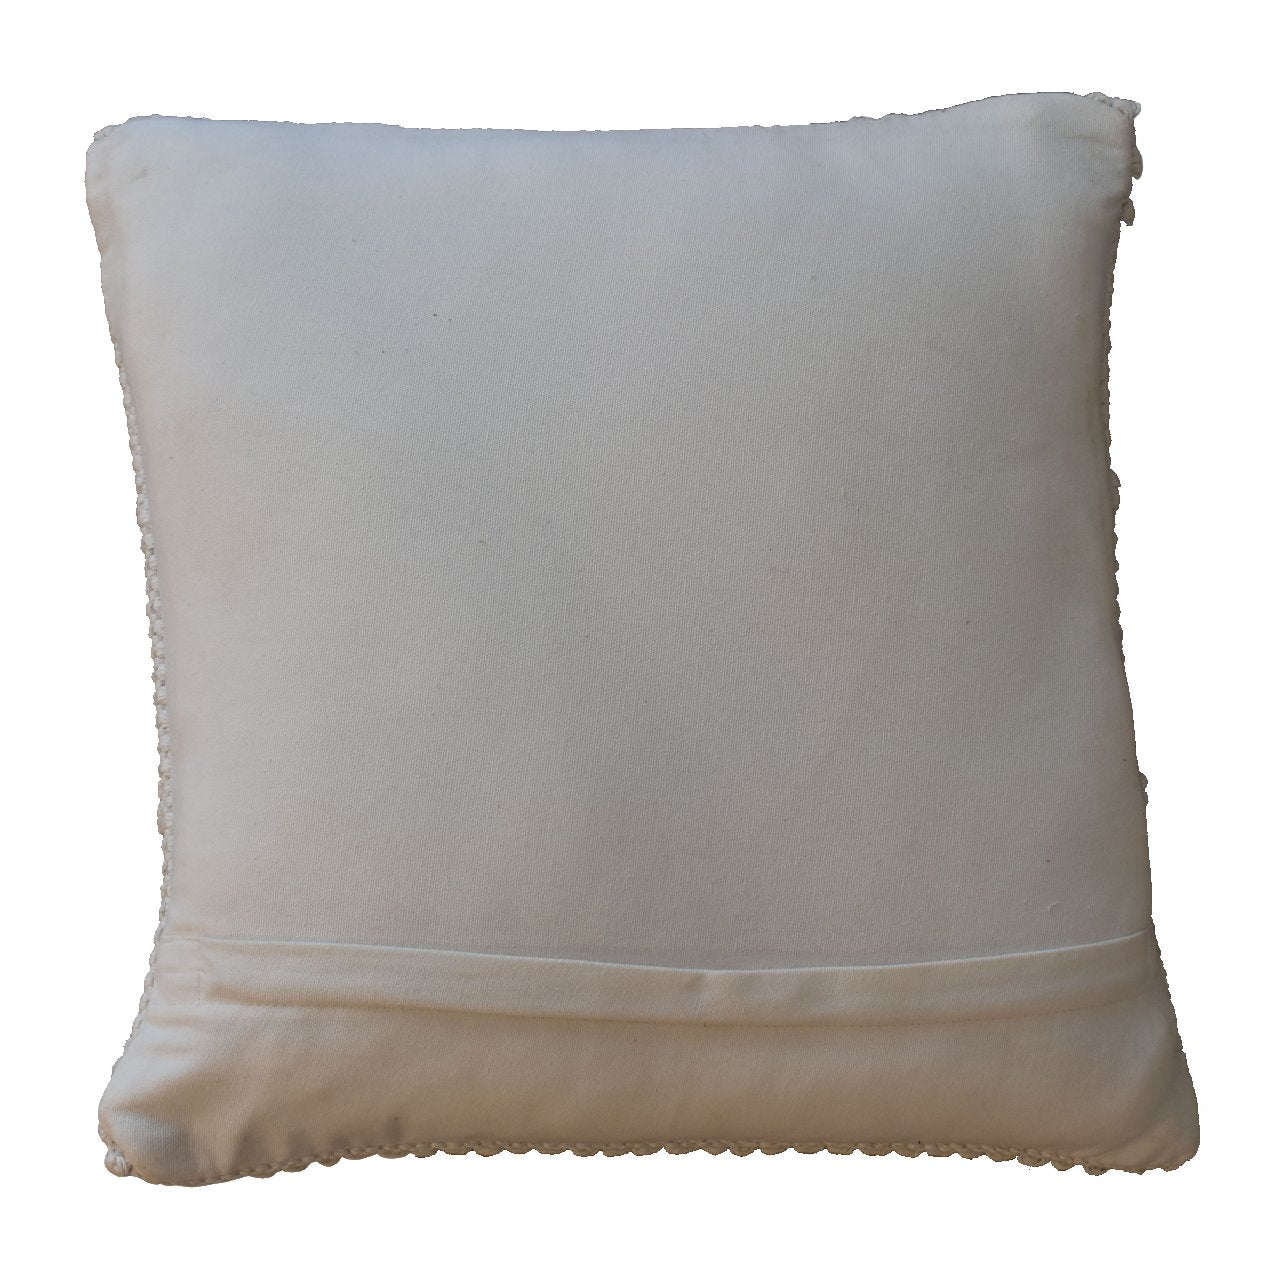 alda cushion set of 2 natural white